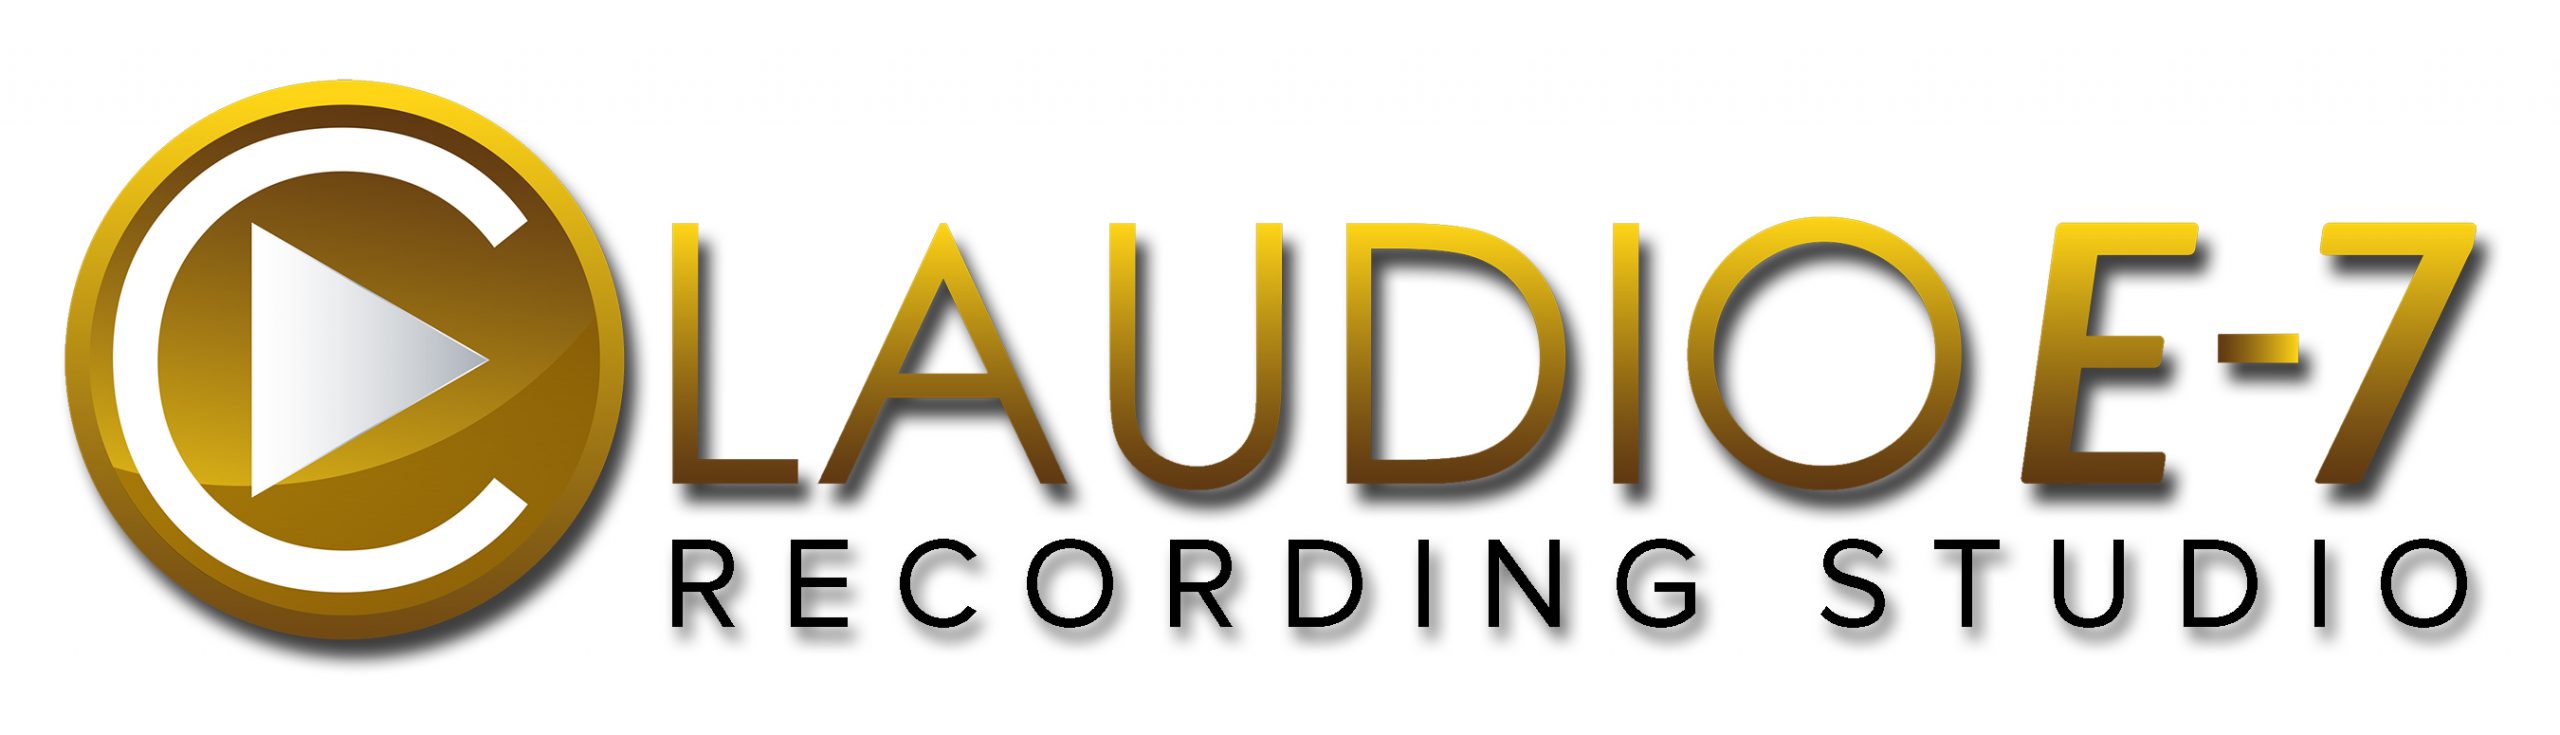 Claudio E-7 Recording Studio